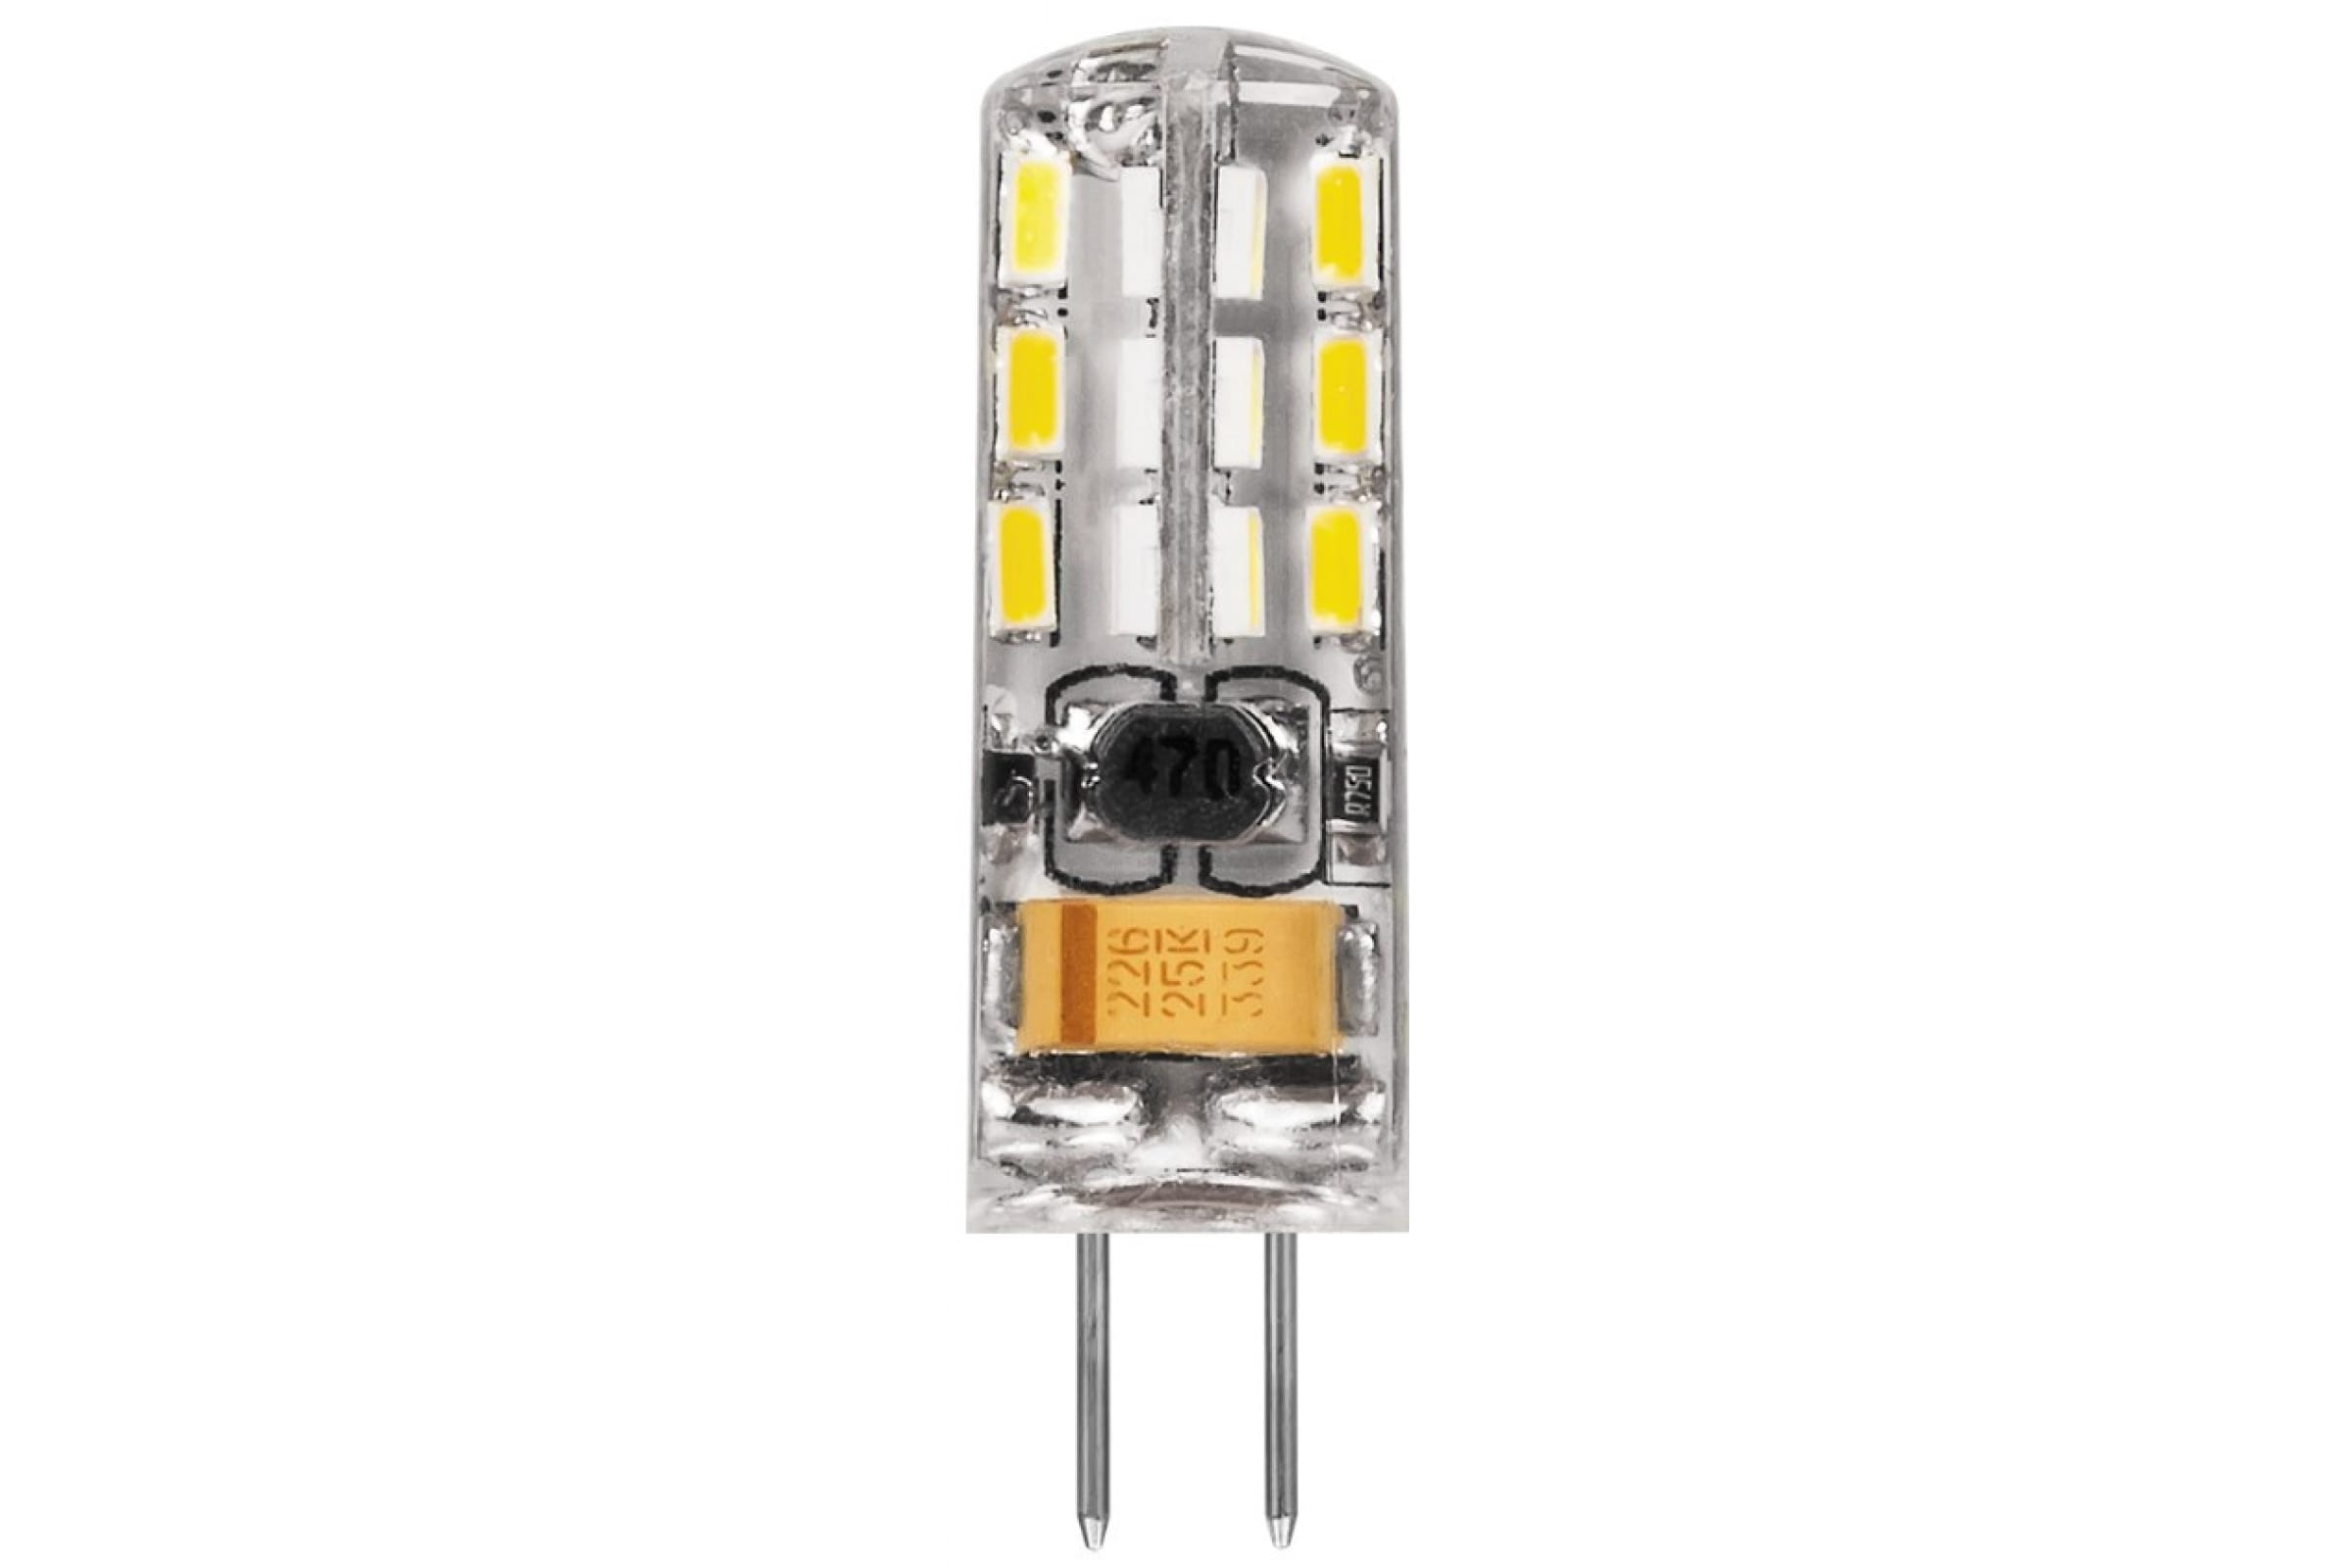 Купить лампочки светодиодные g4. Лампа светодиодная led 2вт 12в g4 белый капсульная (lb-420). Лампа led g4 2w (12v) 4000k lb-420 Feron. Лампа светодиодная led 3вт 12в g4 теплый капсульная (lb-422 48led). Лампа светодиодная Feron lb-420 25858, g4, JC, 2вт.